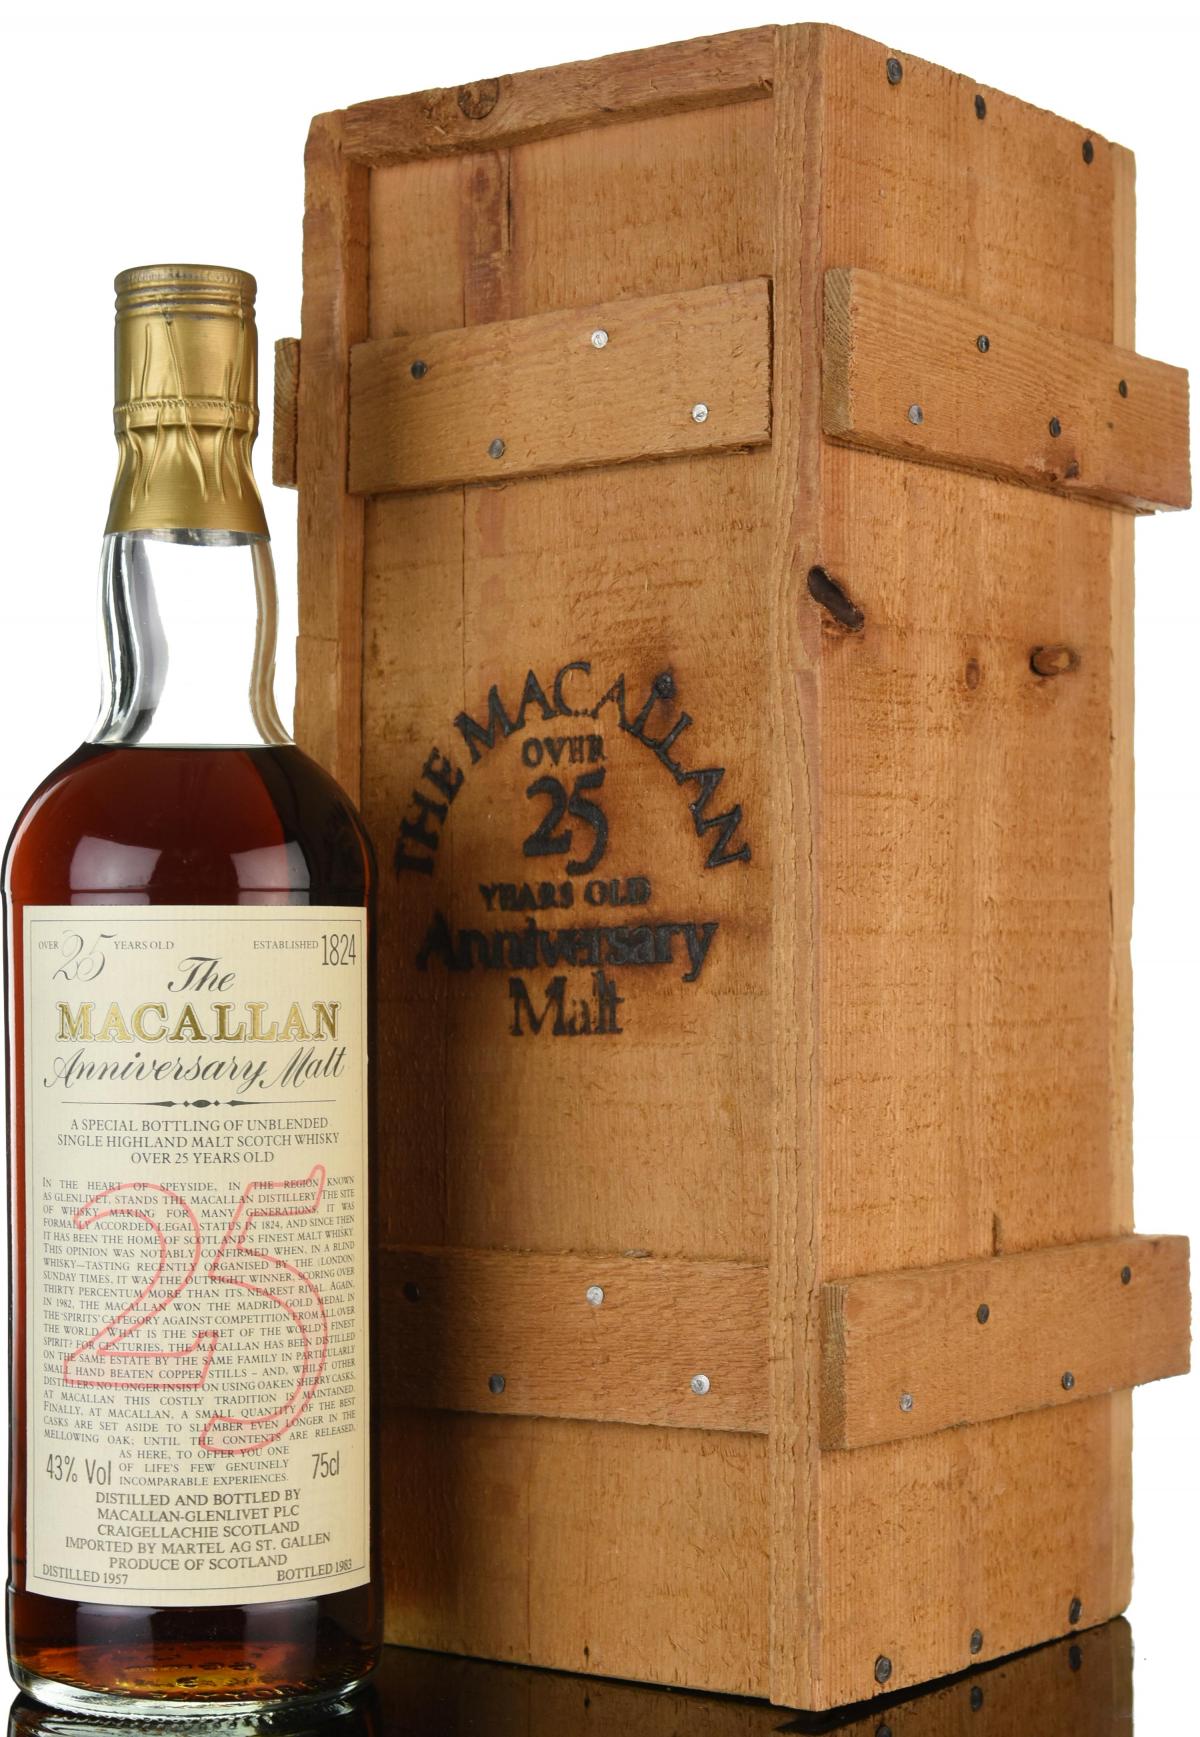 Macallan 1957-1983 - 25 Year Old - Anniversary Malt - First Edition